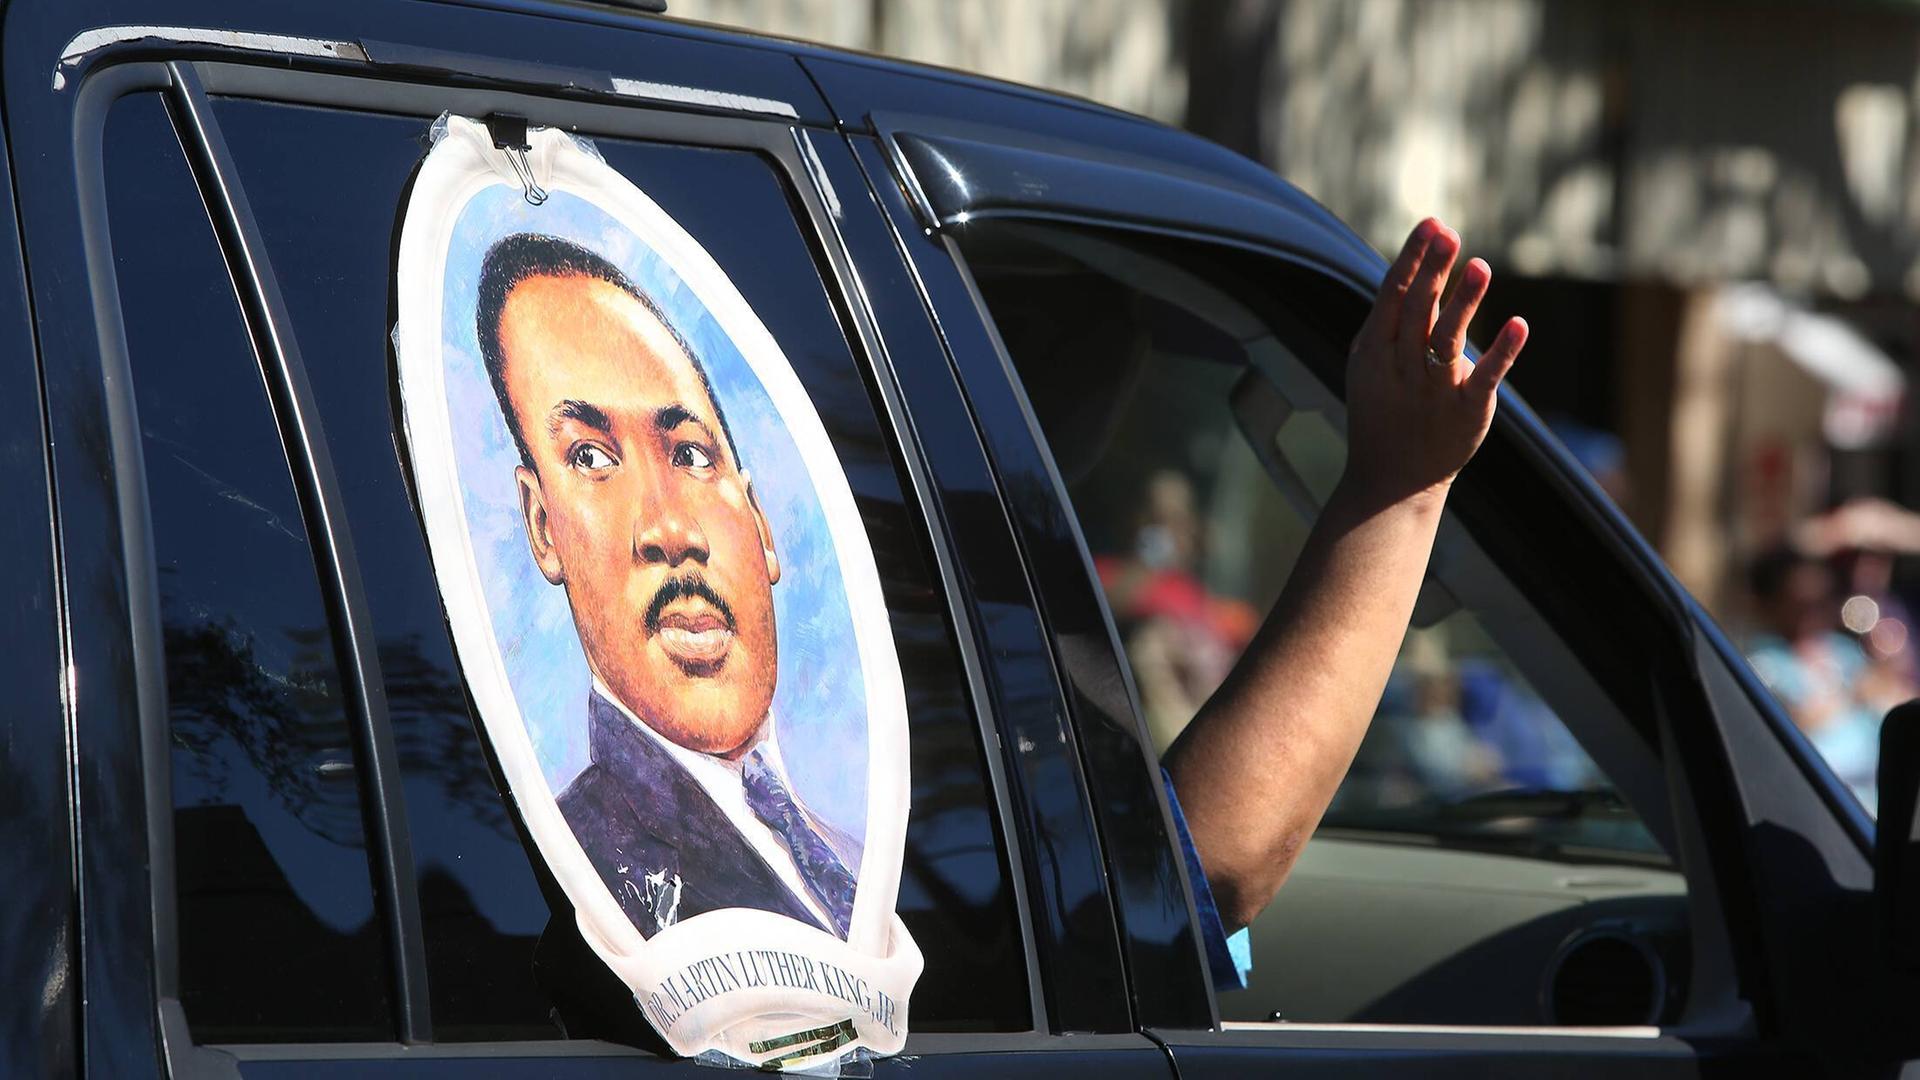 Ein großer Aufkleber mit dem Gesicht von Martin Luther King klebt auf einem Autofenster. Der Beifahrer streckt den Arm aus dem Fenster.